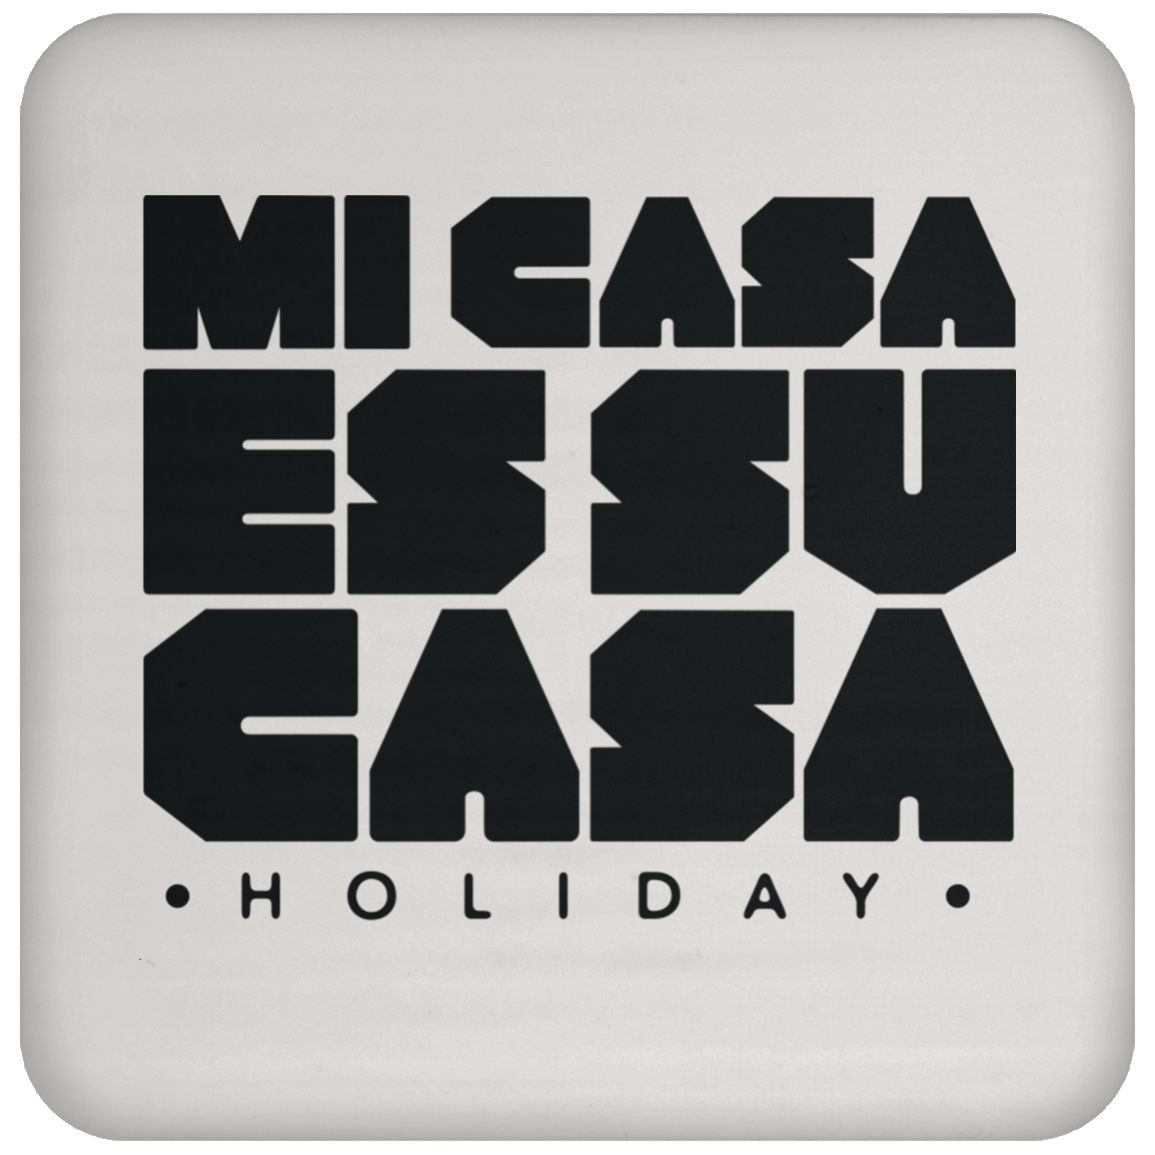 Classic Mi Casa Holiday Coaster